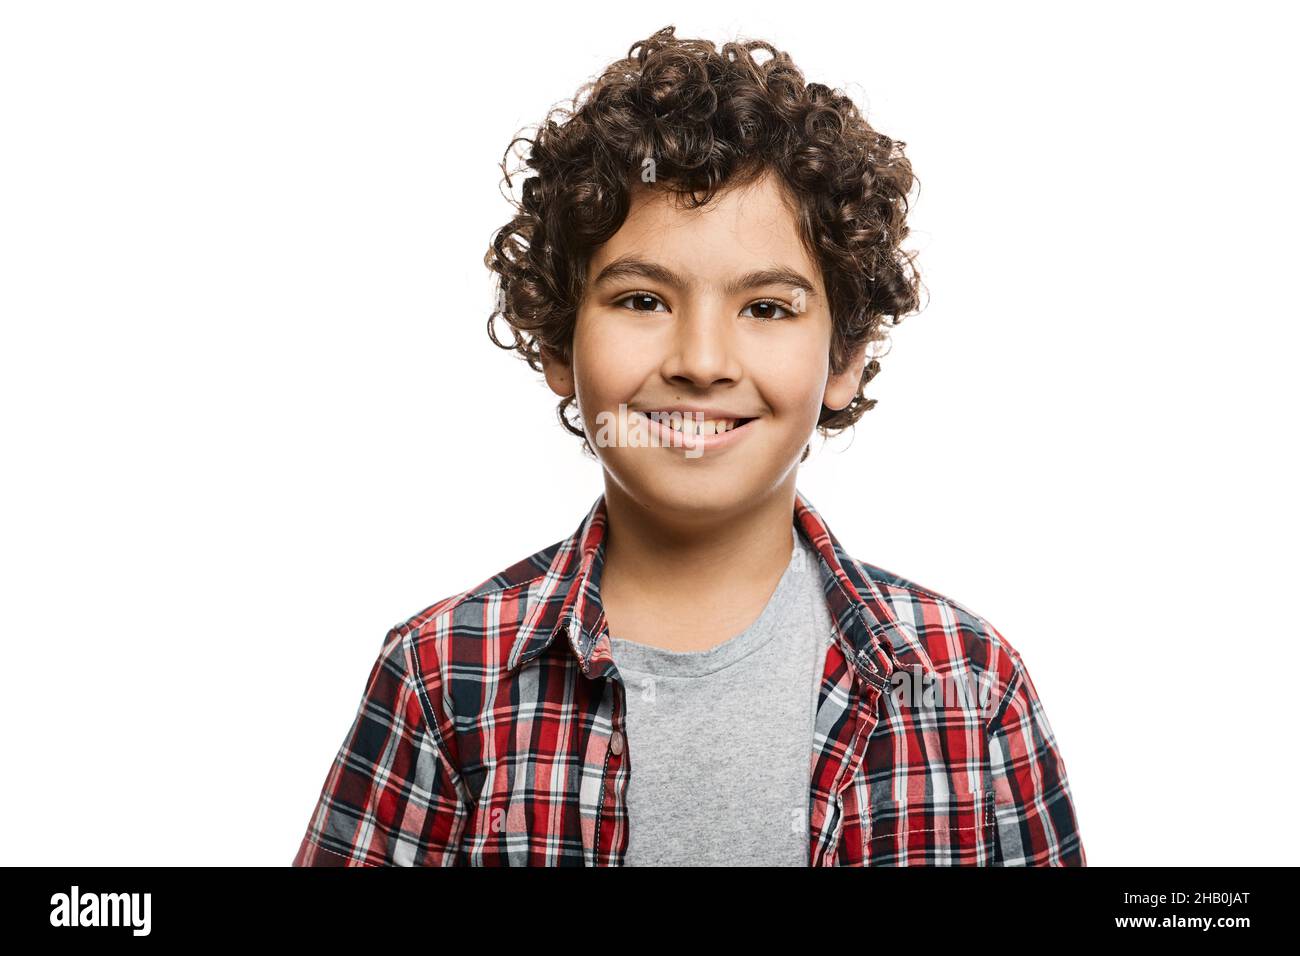 Portrait d'un beau garçon du Moyen-Orient avec un sourire crasseux porté dans une chemise à carreaux, isolée sur fond blanc Banque D'Images